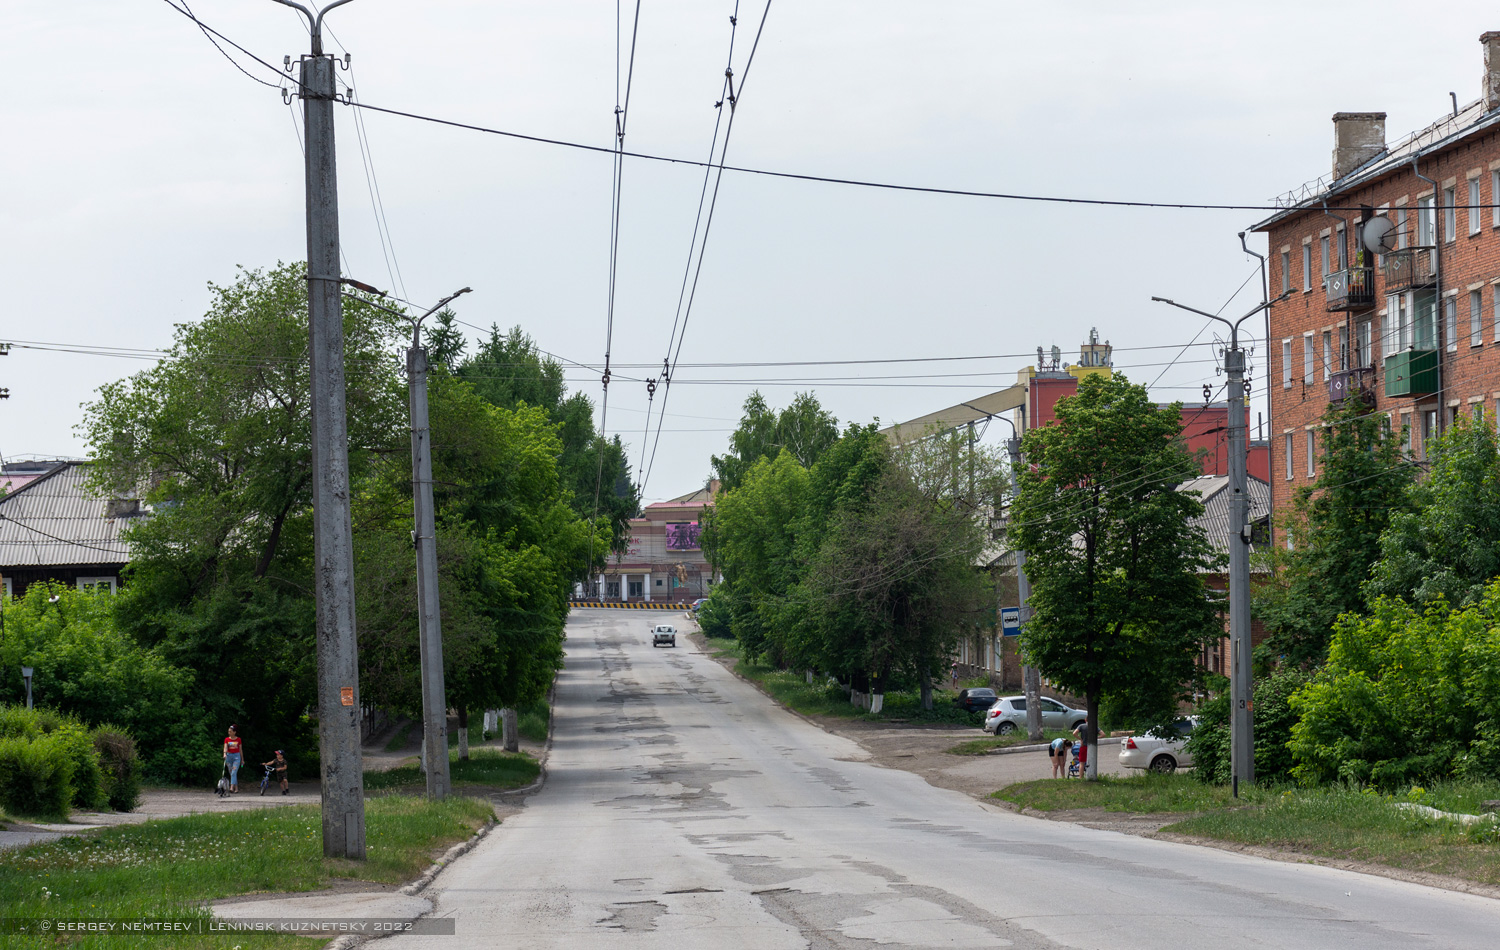 Ленинск-Кузнецкий — Троллейбусные линии и кольца